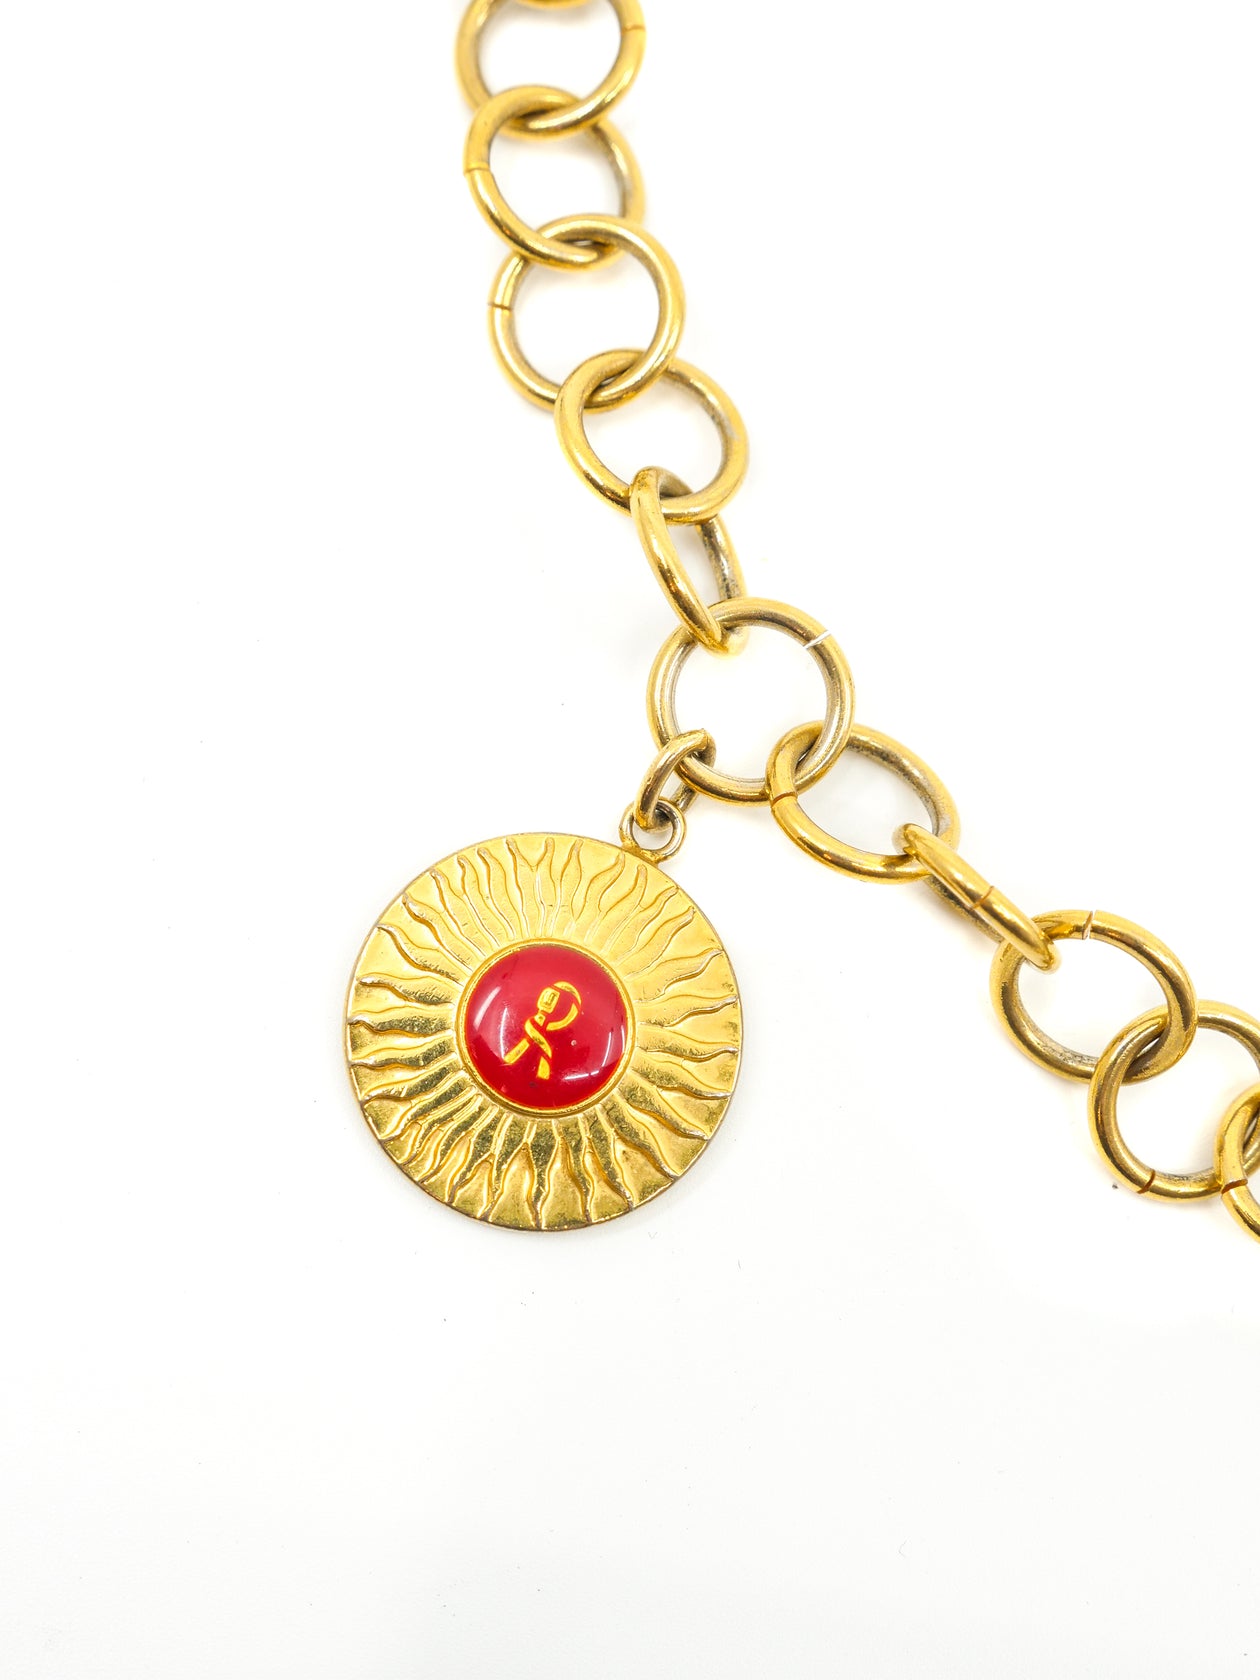 Gold medallion chain belt